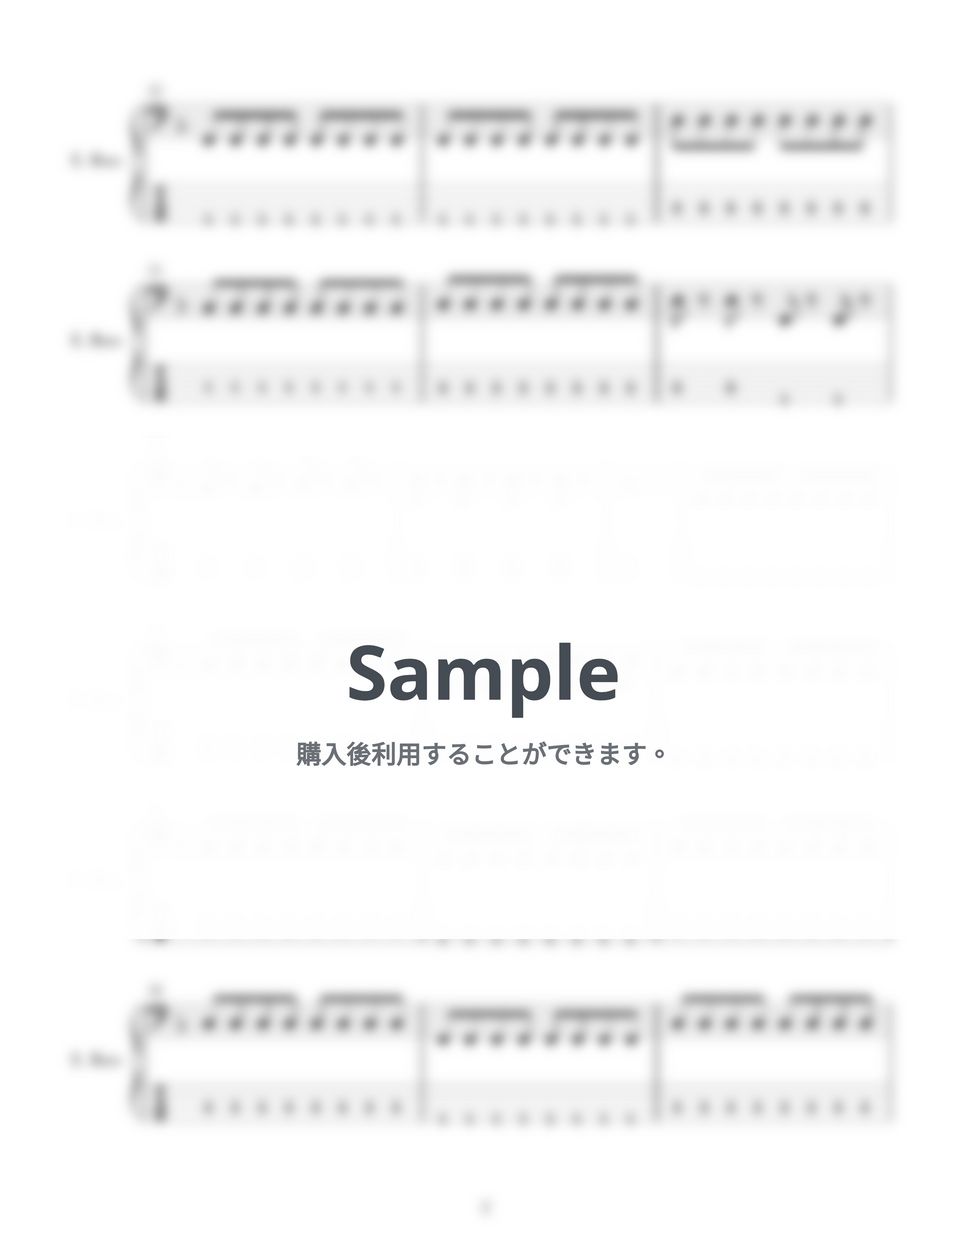 あいみょん - 桜が降る夜は (４弦ベースTAB譜、PDF6枚) by G's score